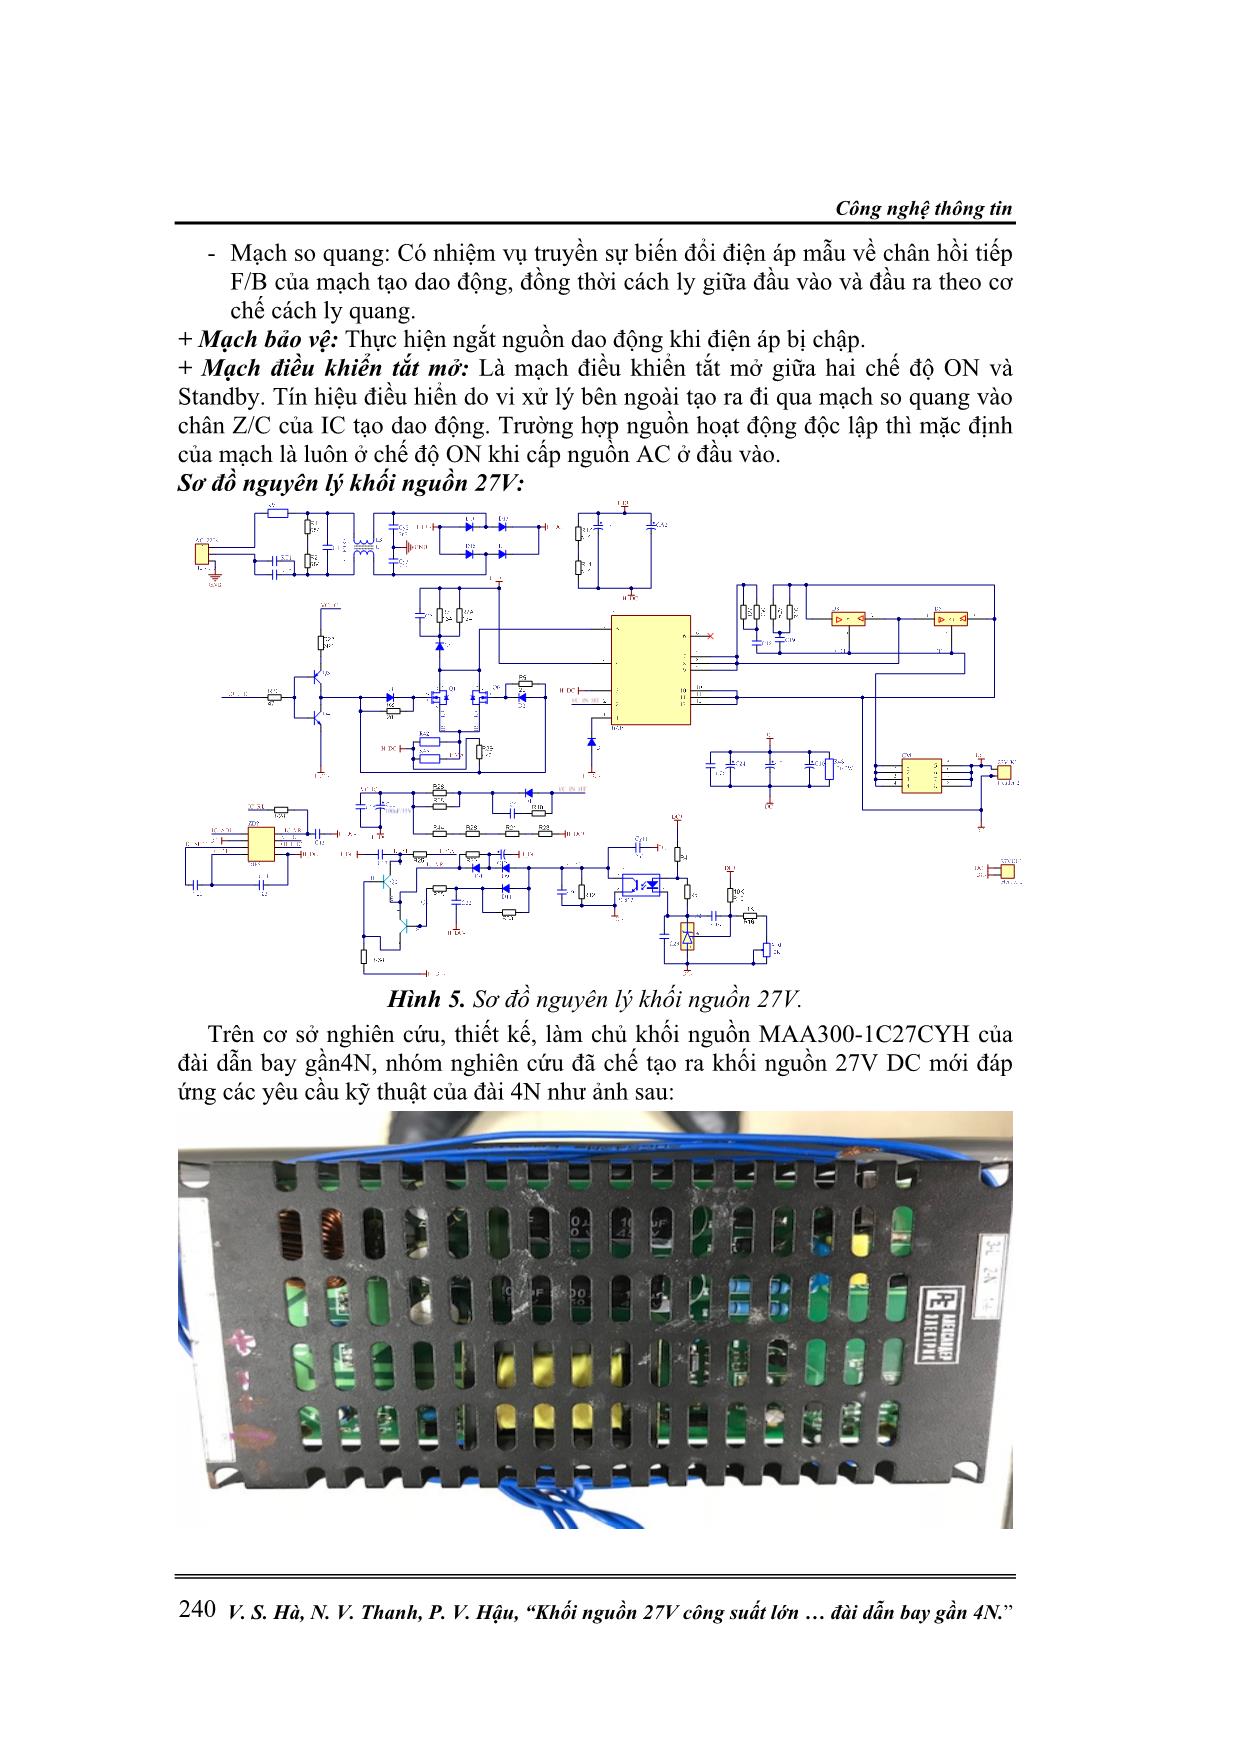 Khối nguồn 27V công suất lớn MAA300-1C27CYH trong khối xử lý trung tâm của đài dẫn bay gần 4N trang 5